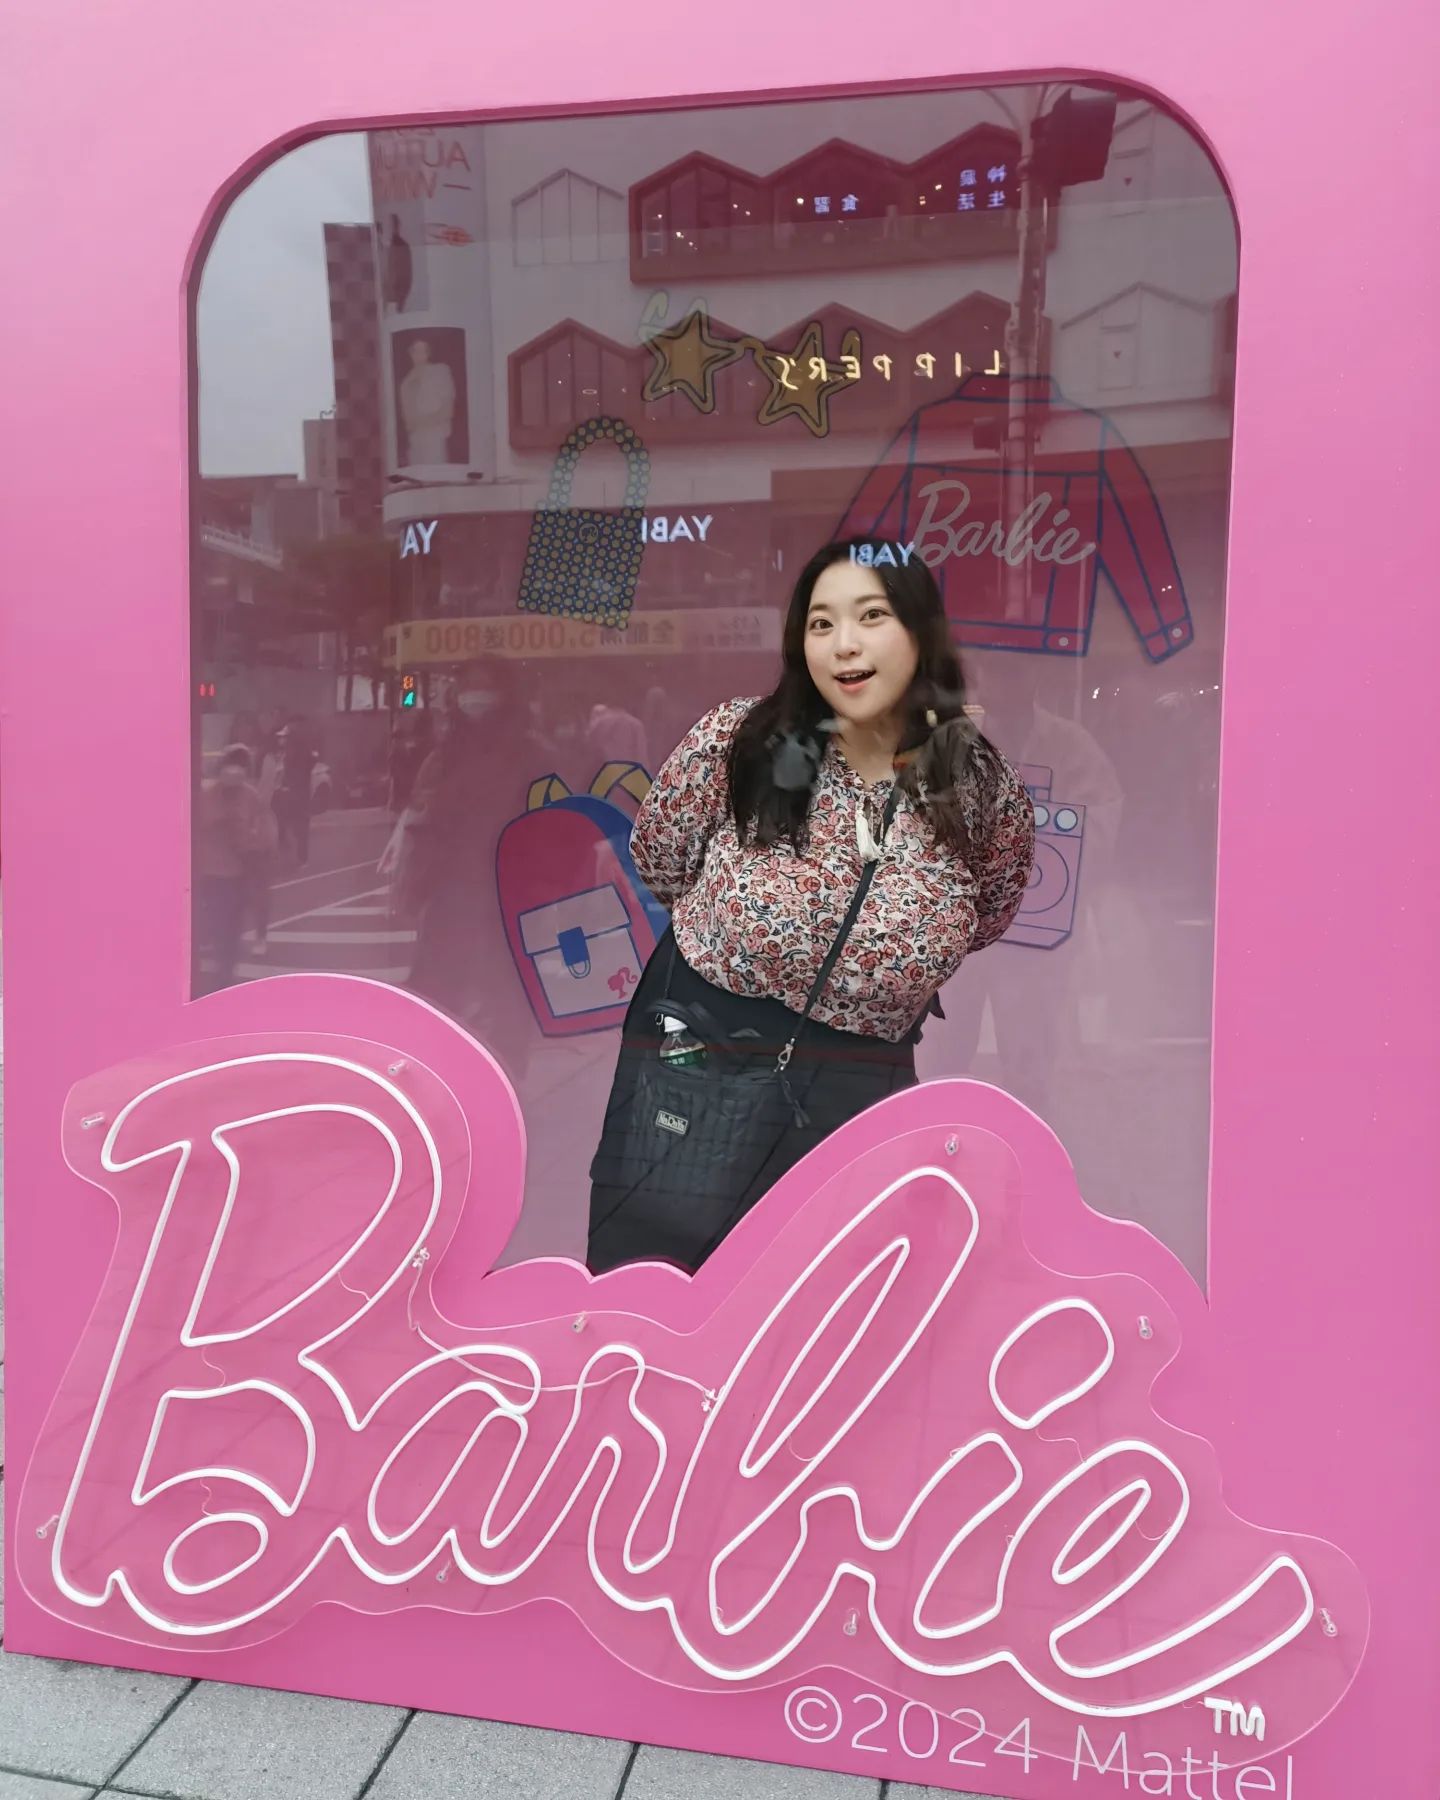 金剛芭比 🦍✨
最近去看了哥吉拉大戰金剛，
真是名副其實的爽片耶 xDDDD
還是比較喜歡早期那種很鏘的哥吉拉電影，
在這以假亂真的時代，
爛爛的誇張特效和聲光效果反而格外迷人。
.
.
#中山 #誠品 #新光三越 #芭比 #barbie #barbiedoll #doll #taipei #taiwan #pink